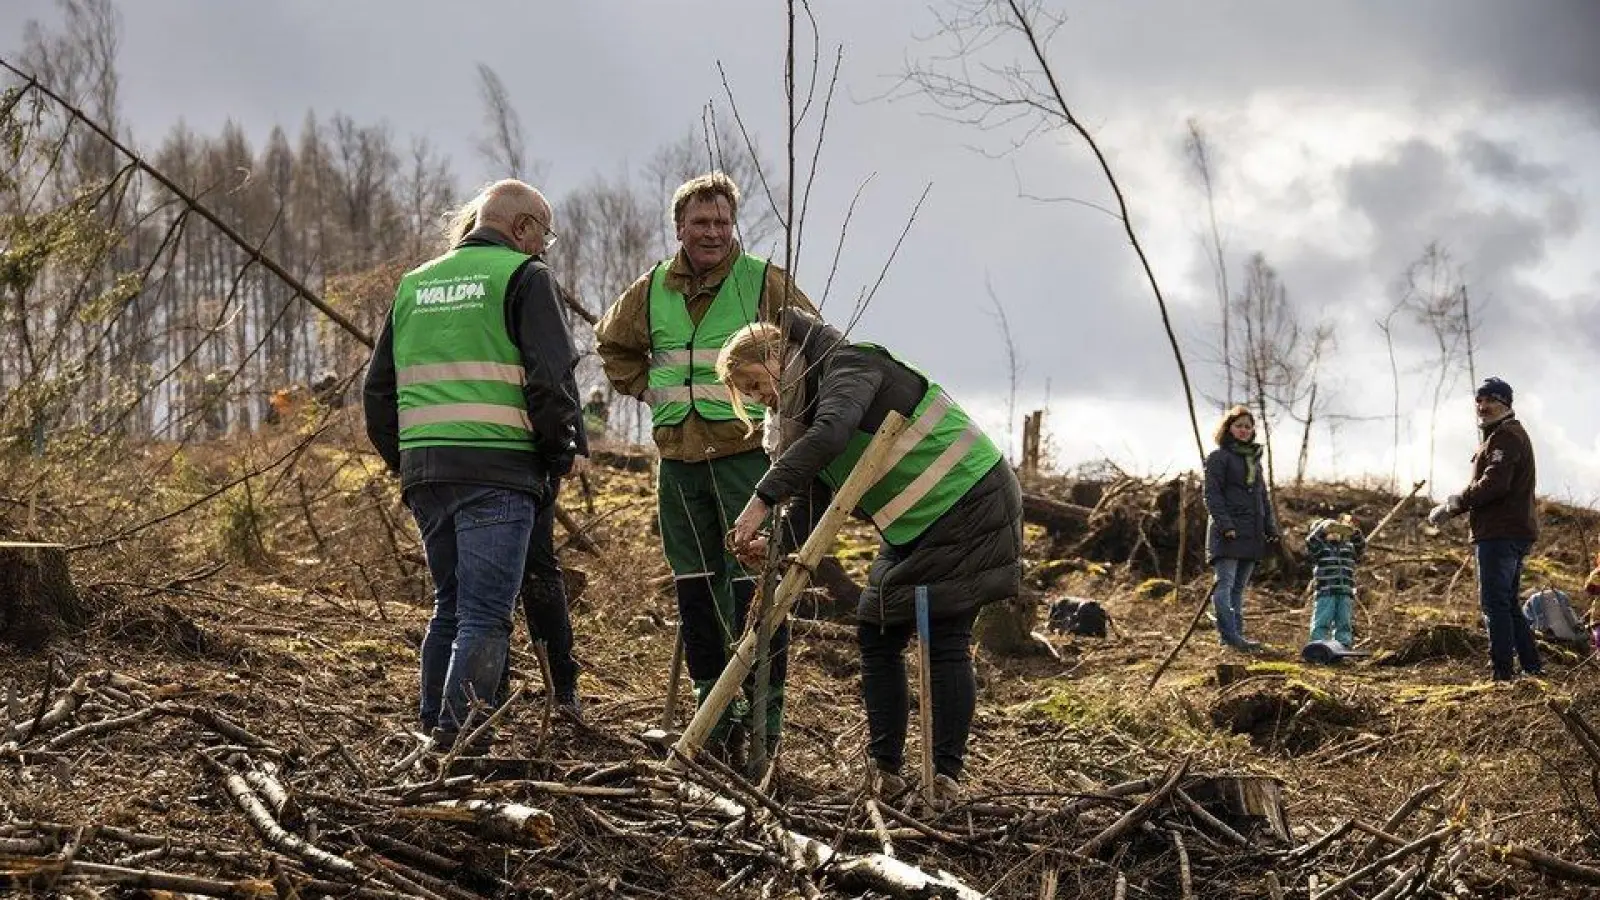 Bürgerinnen und Bürger können persönlich aktiv werden, wenn es um die Pflanzung klimastabiler Mischwälder geht.  (Foto: PEFC Deutschland/sabrinity)